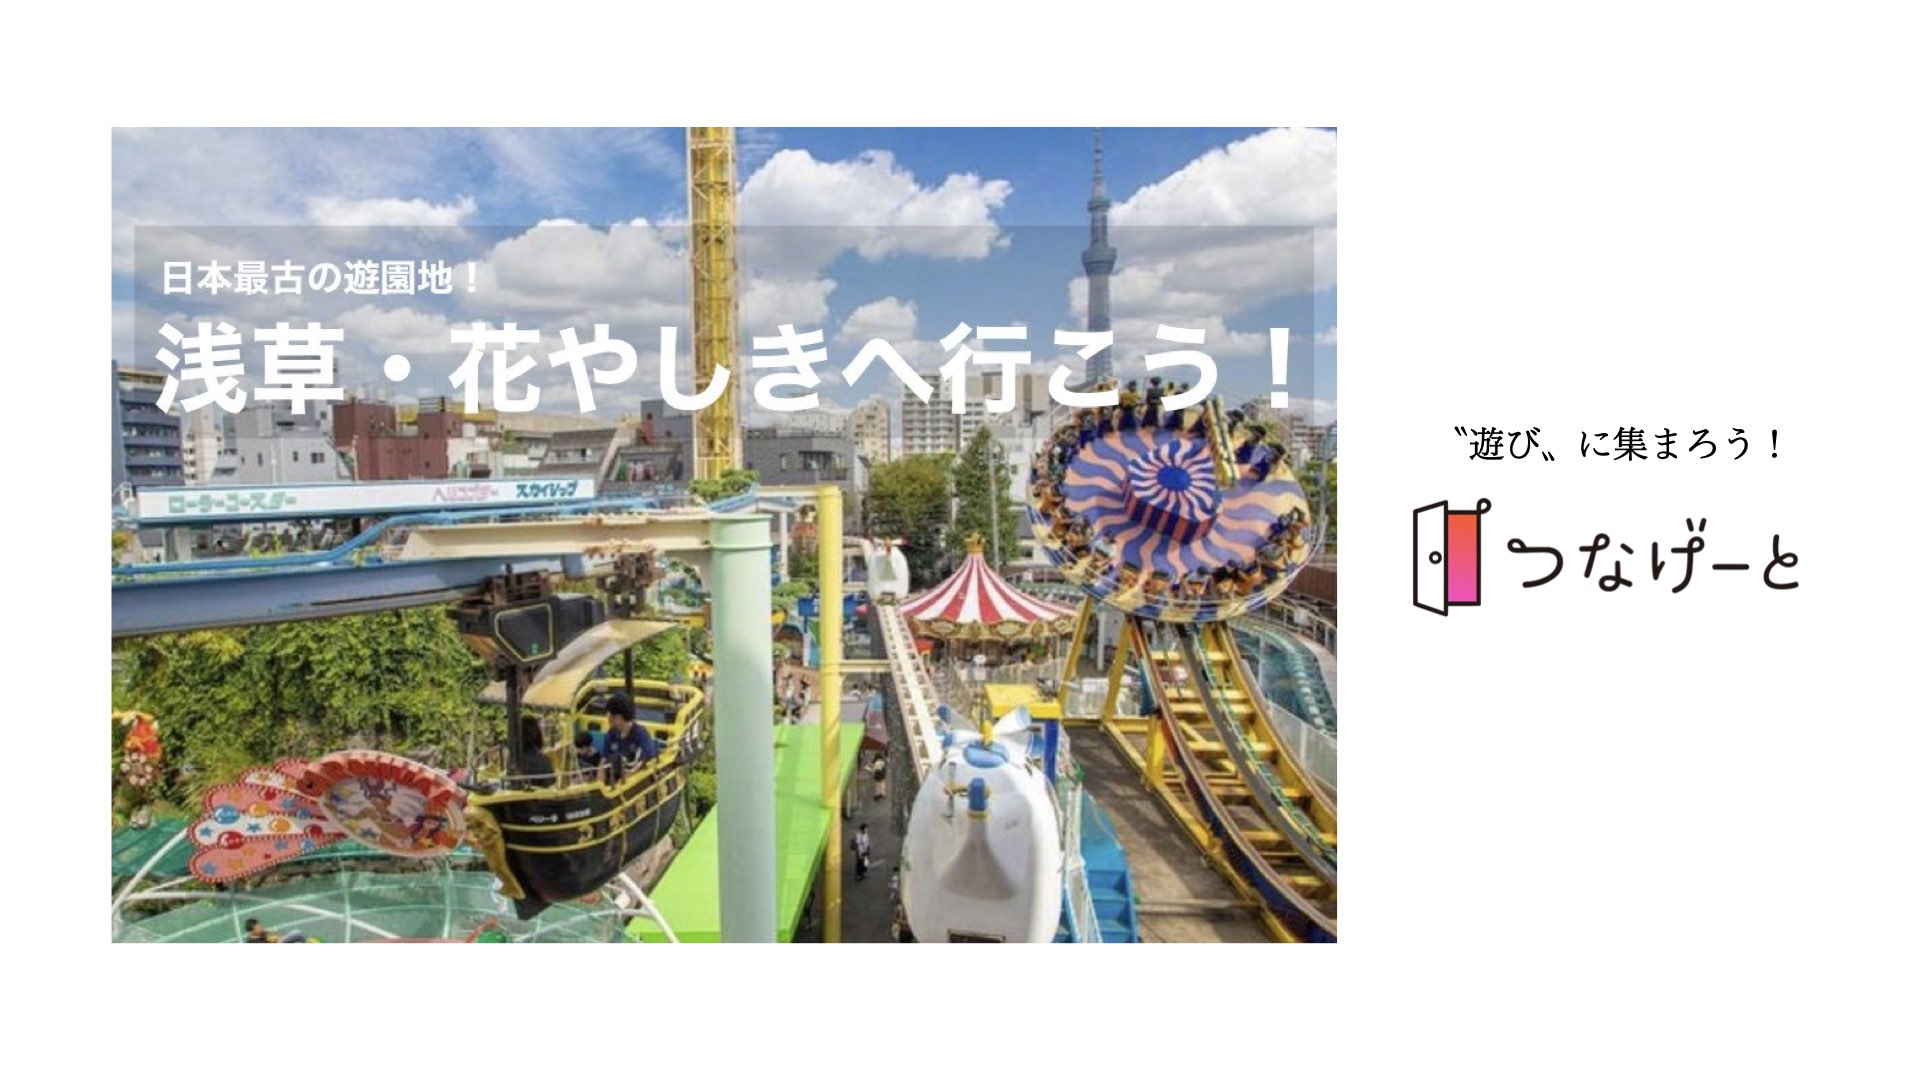 つなげーと 浅草 花やしきへ行こう レトロ感満載 日本最古の遊園地で遊ぼう 21 12 4 土 13 00 Newscast